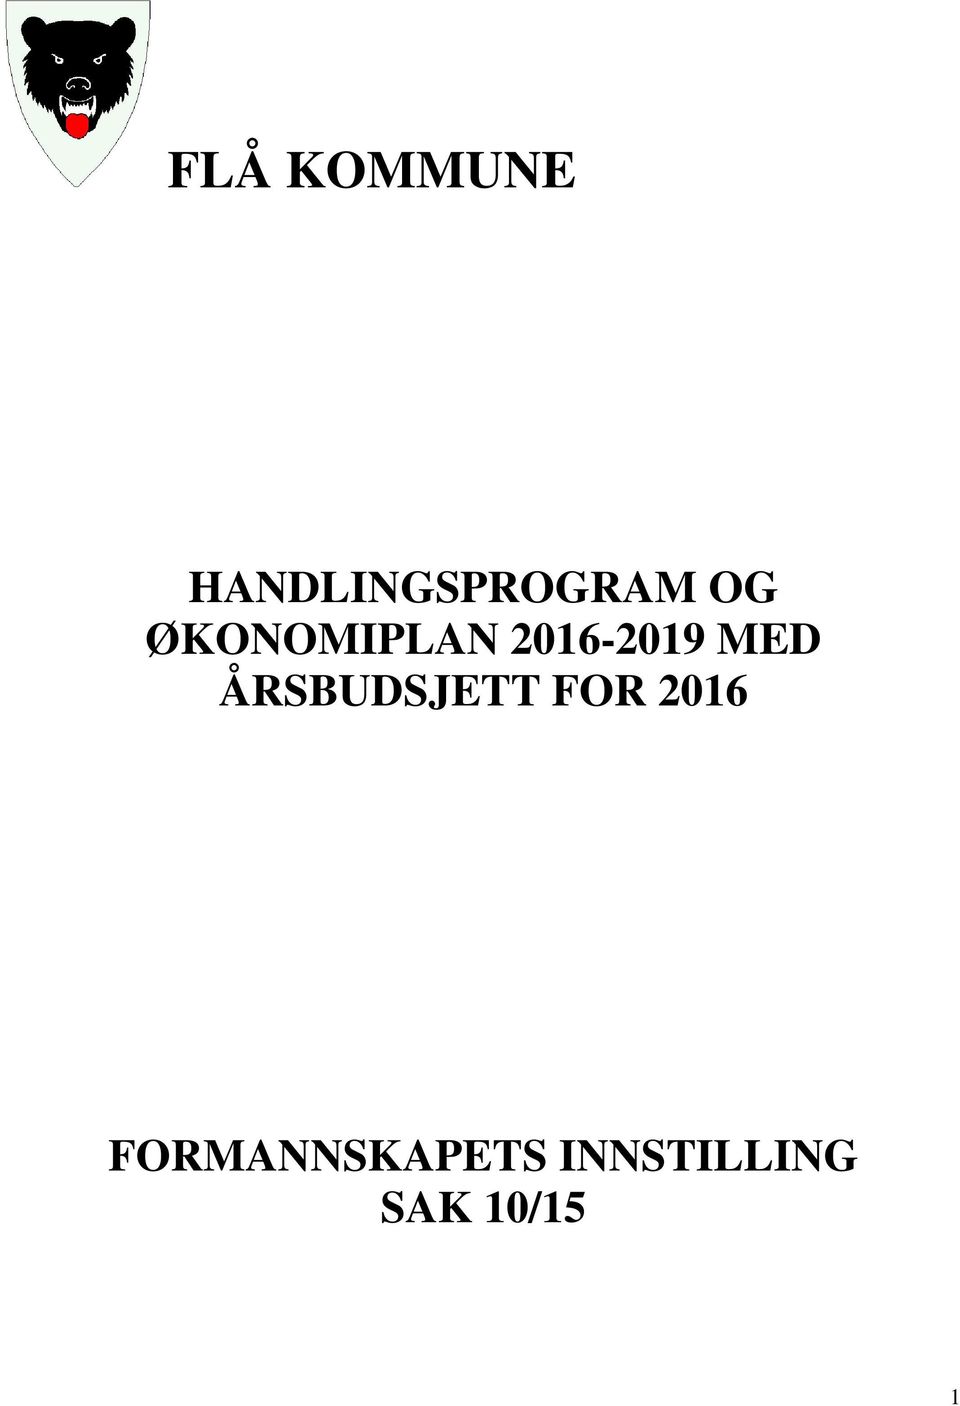 ÅRSBUDSJETT FOR 2016